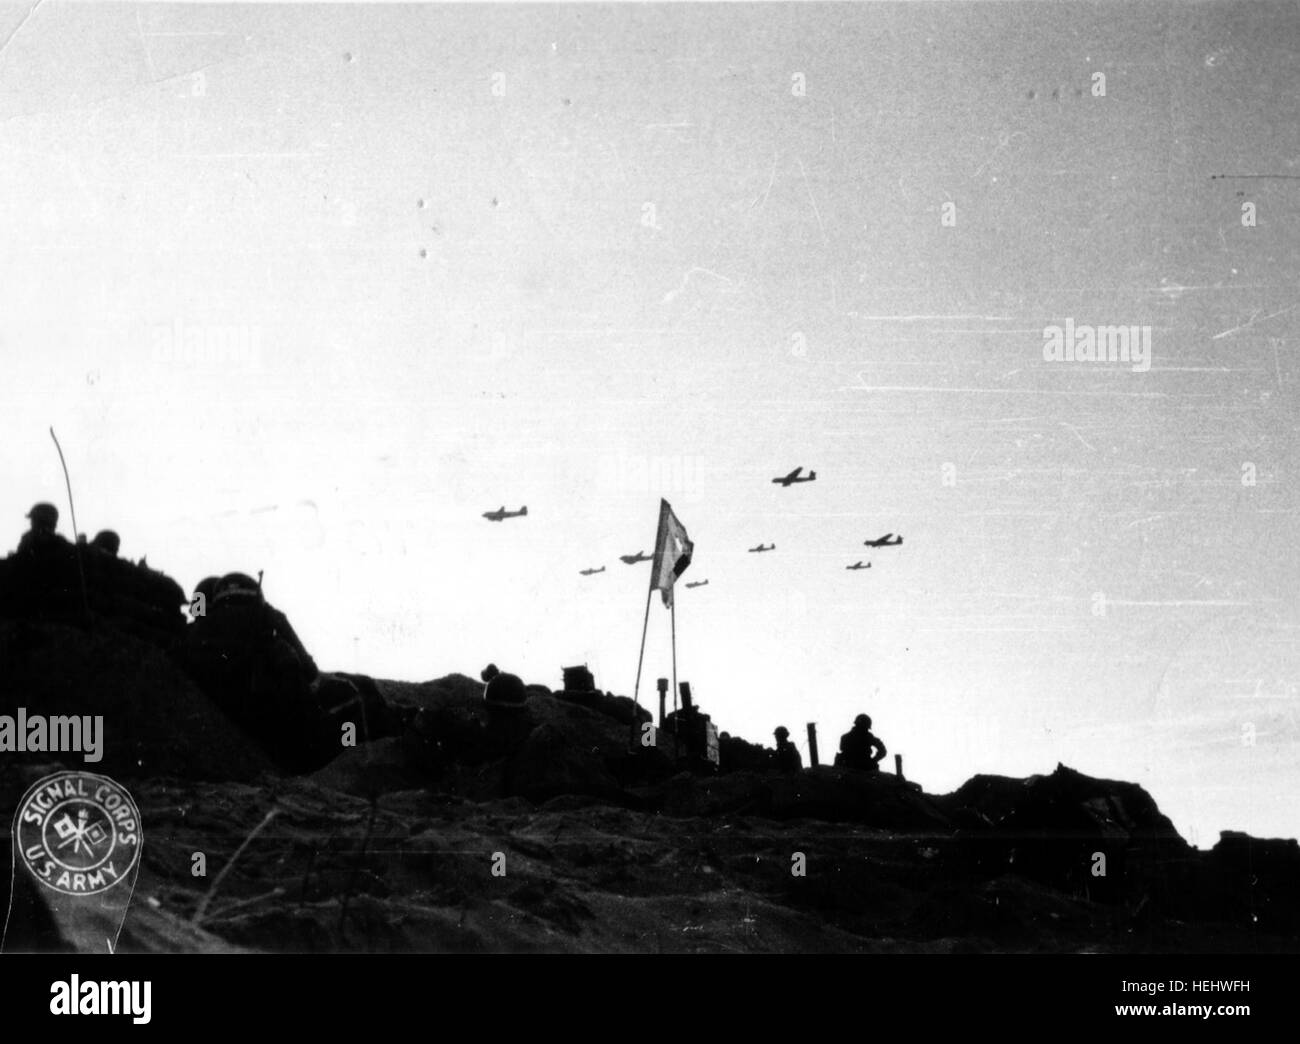 Des planeurs Horsa remorqués par des C-47 survolent Utah Beach par-dessus laquelle furent amenés les renforts pour la 82nd Airborne par planeurs. Ceci permet de dater la photographie au 7 juin 1944 (date de ces missions) pour LZ 'W' : Les Forges  -Galveston (arrivée sur LZ à 07h00 le 7 juin de 18 Horsa) -et Hackensack (arrivée sur LZ à 09h00 le 7 juin de 25 Horsa) Au premier plan, on devine,  trois MP (Military Police) reconnaissables à leur casque avec la bande blanche ou jaune, dont un sous-officier (trait horizontal blanc à l'arrière du casque). http://www.flickr.com/photos/mlq/3041272228/  Stock Photo